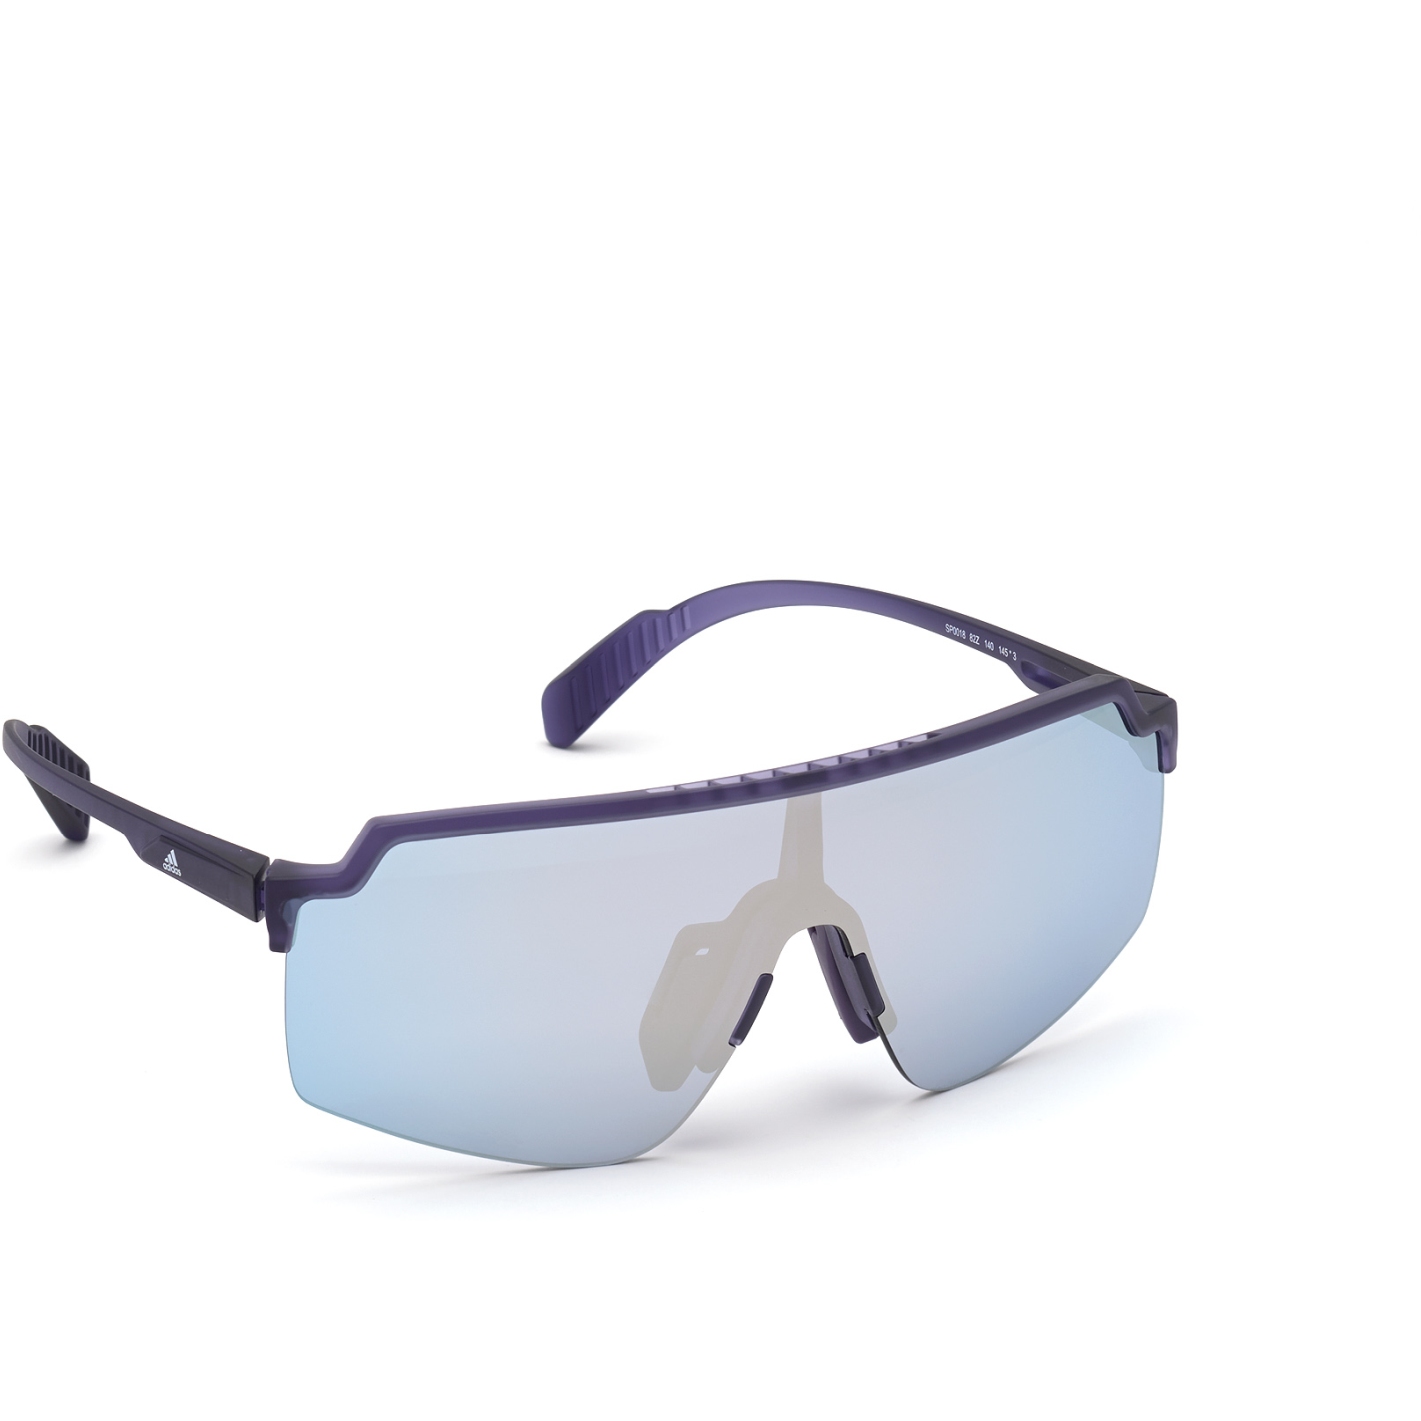 Produktbild von adidas Prfm Shield Lite SP0018 Sport Sonnenbrille - Dark Purple / Contrast Mirror Blue